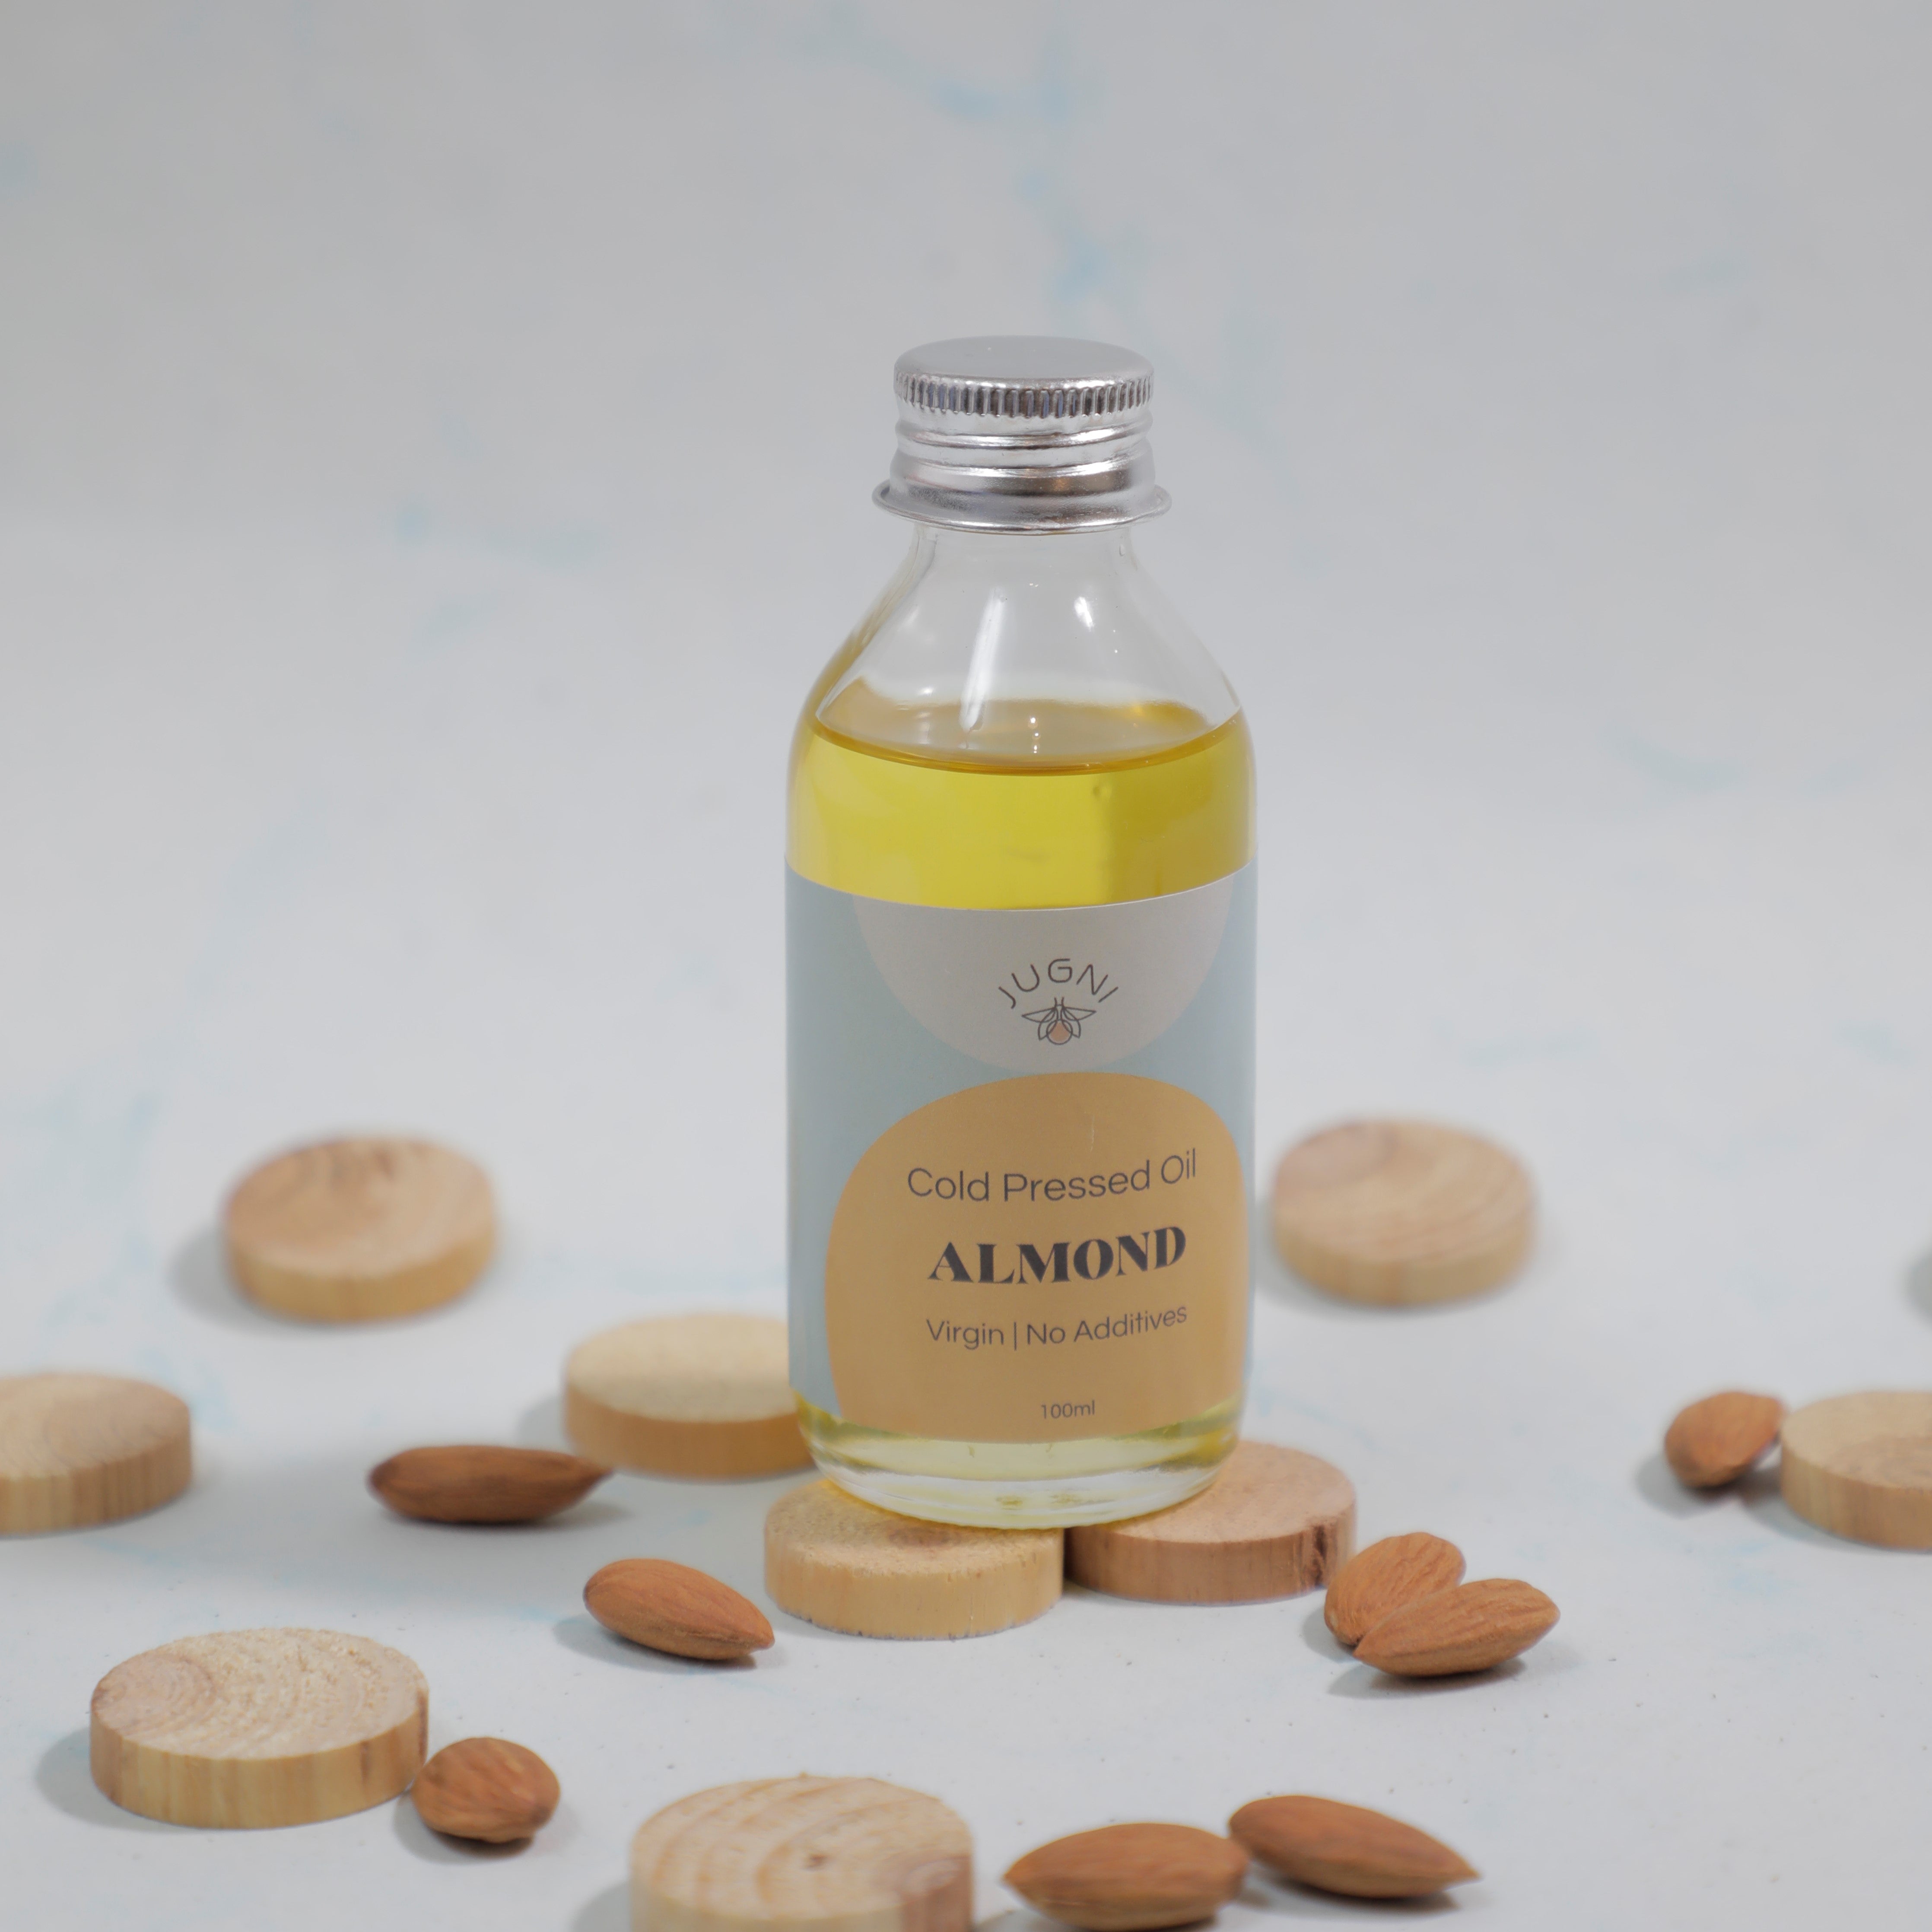 Cold Pressed Almond oil